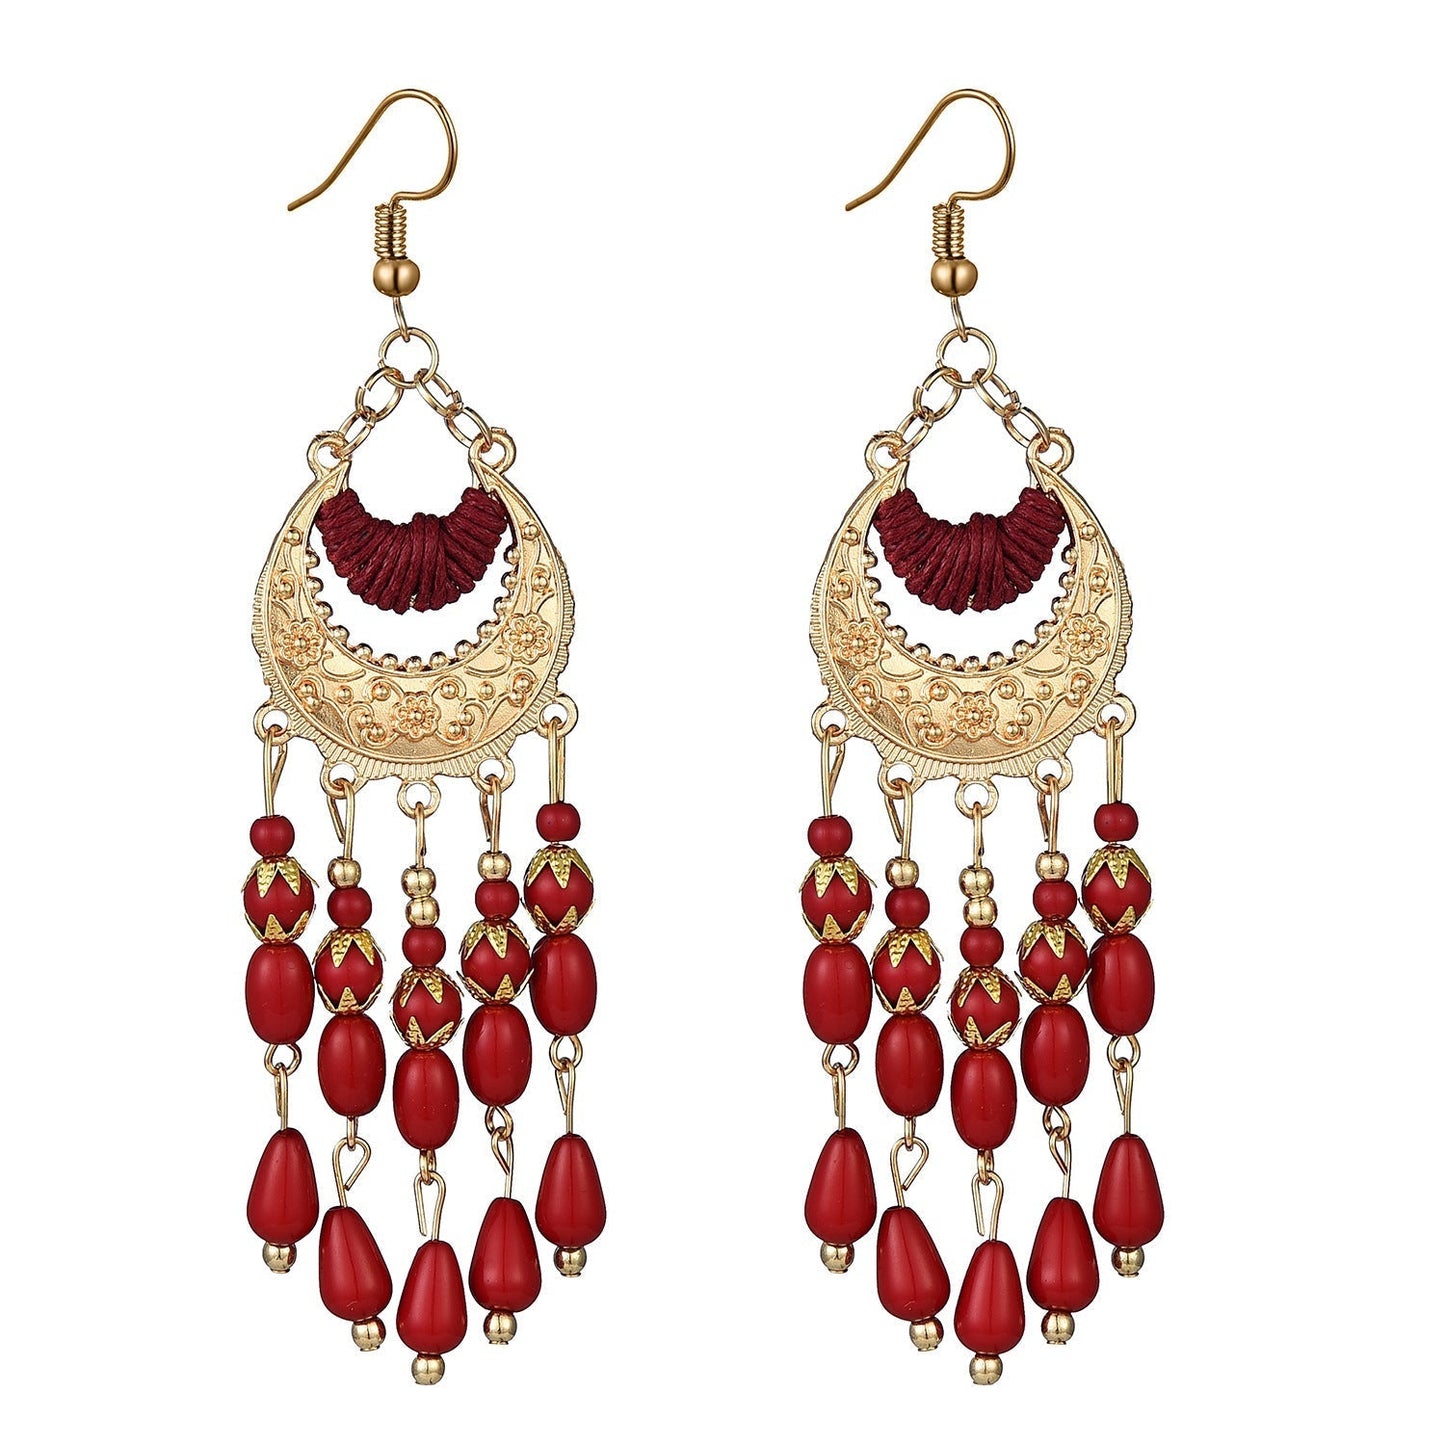 Ethnic style tassel bead earrings